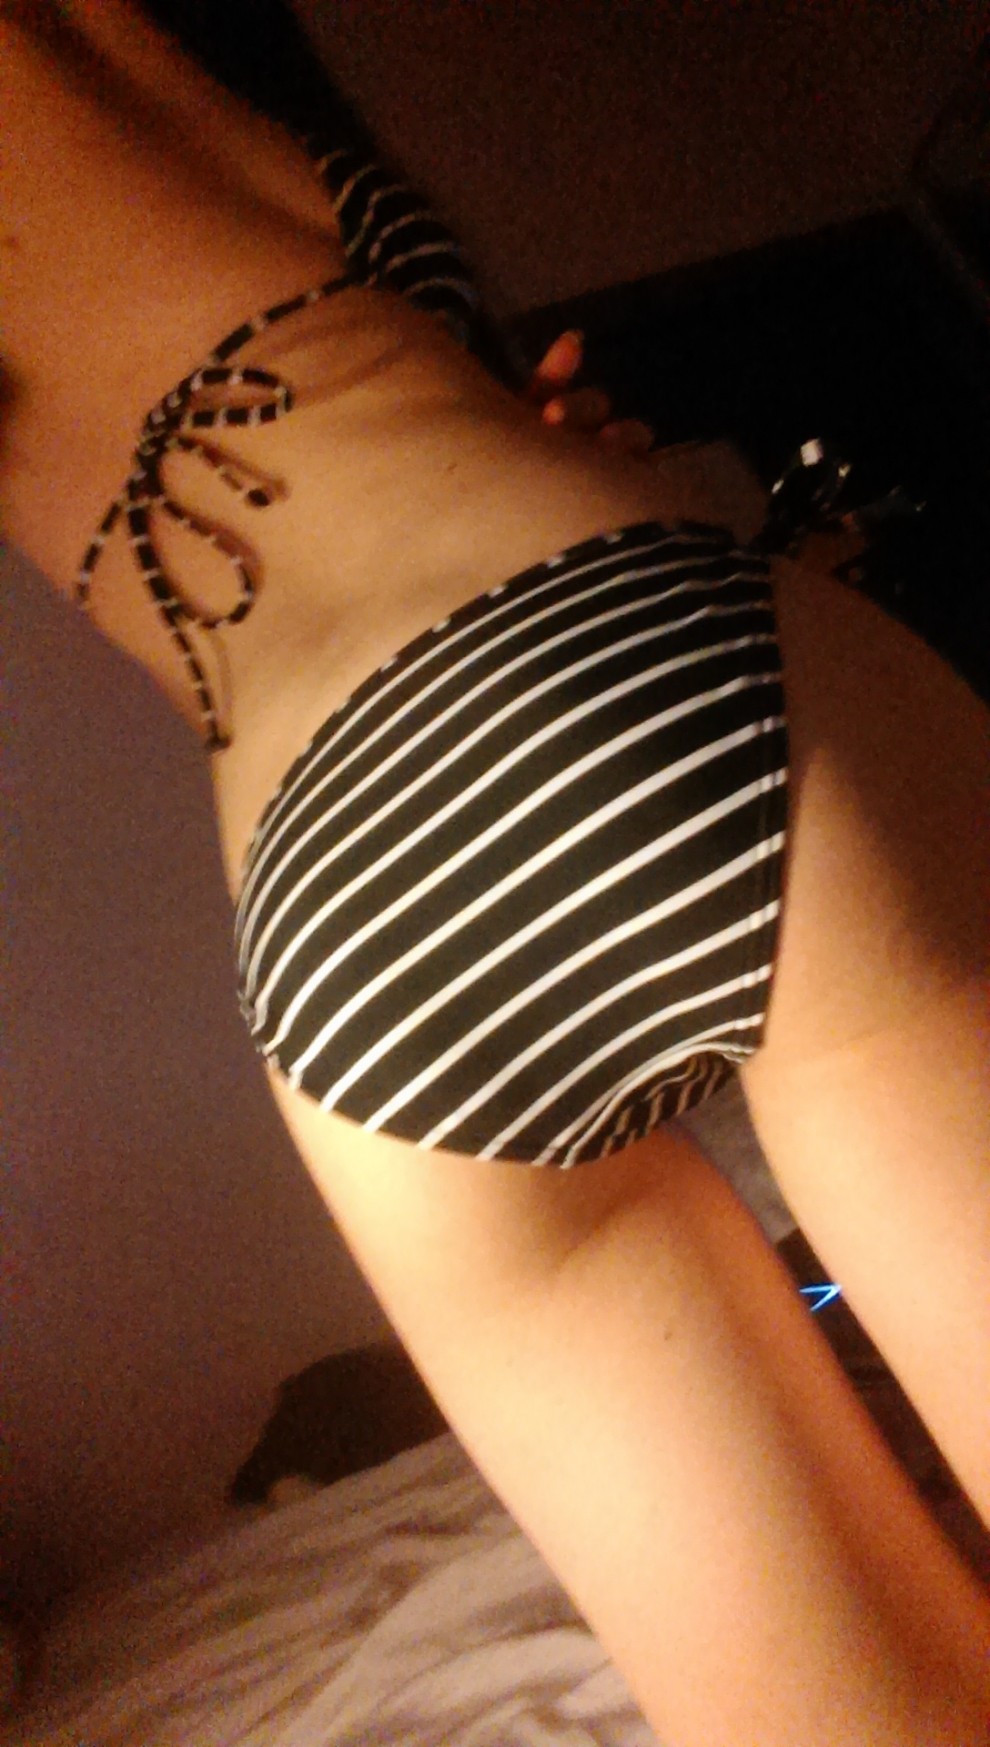 anyone else like my new bikini?